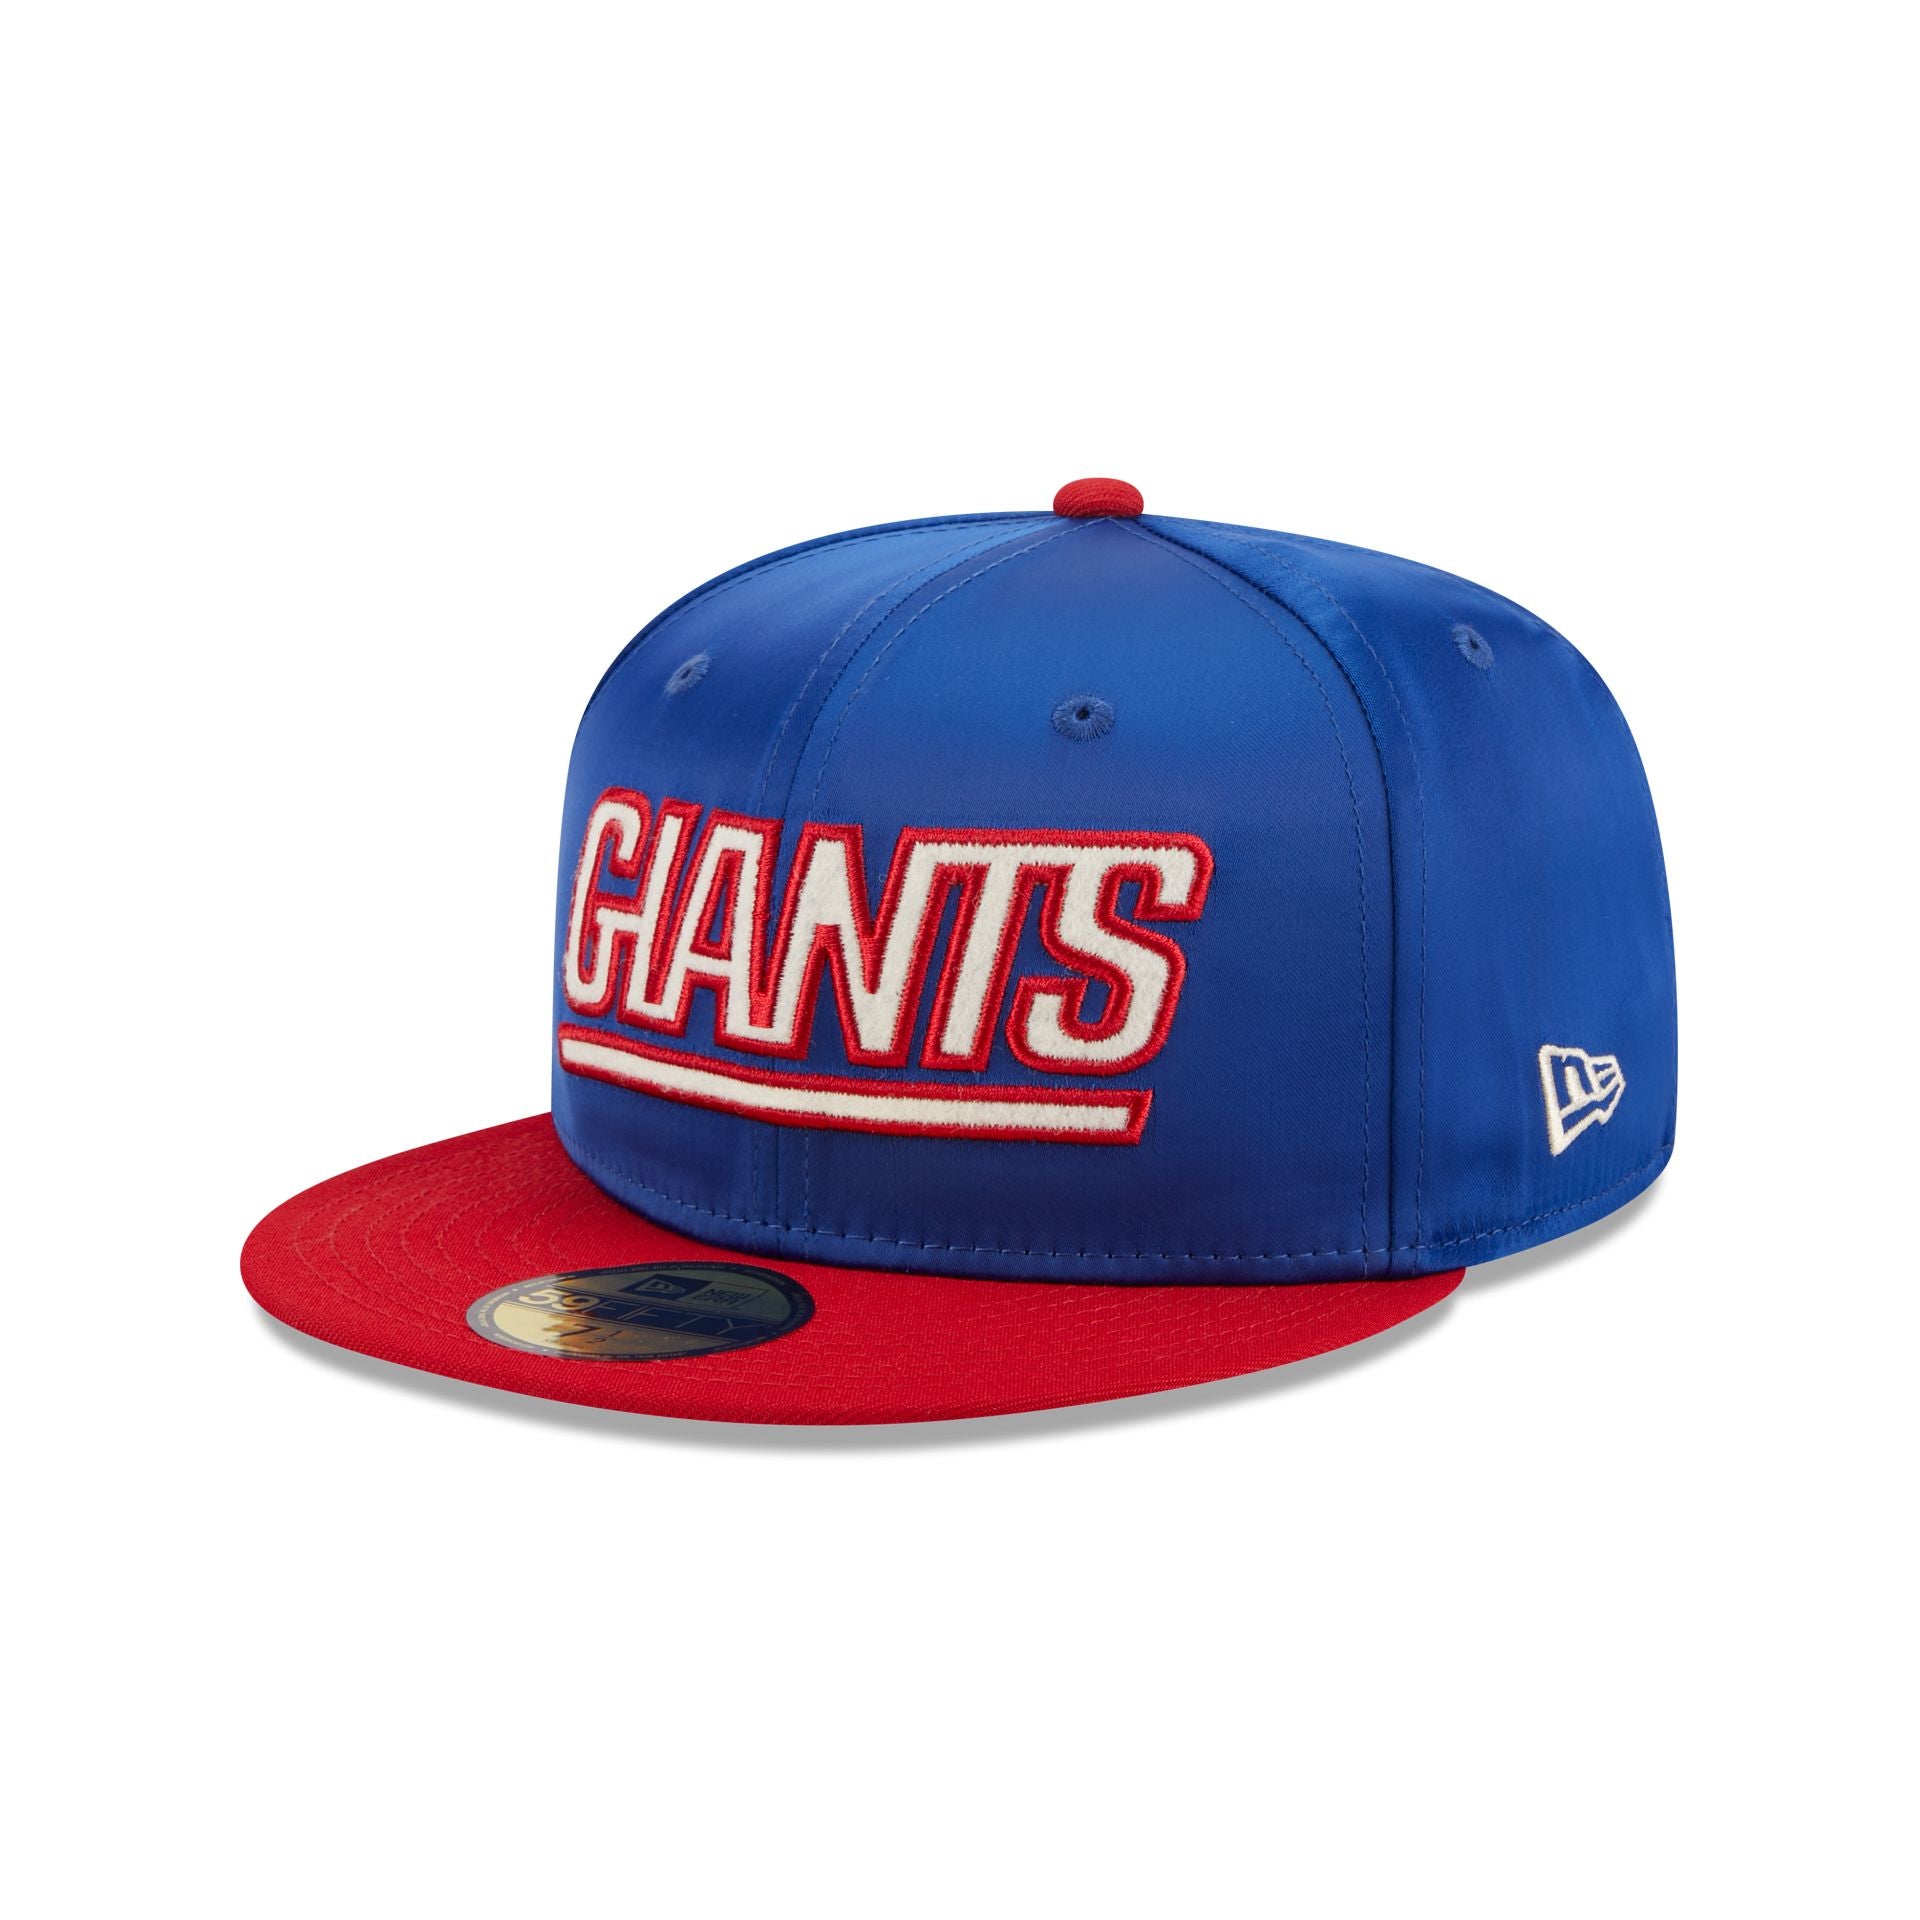 New York Giants Baseball Caps